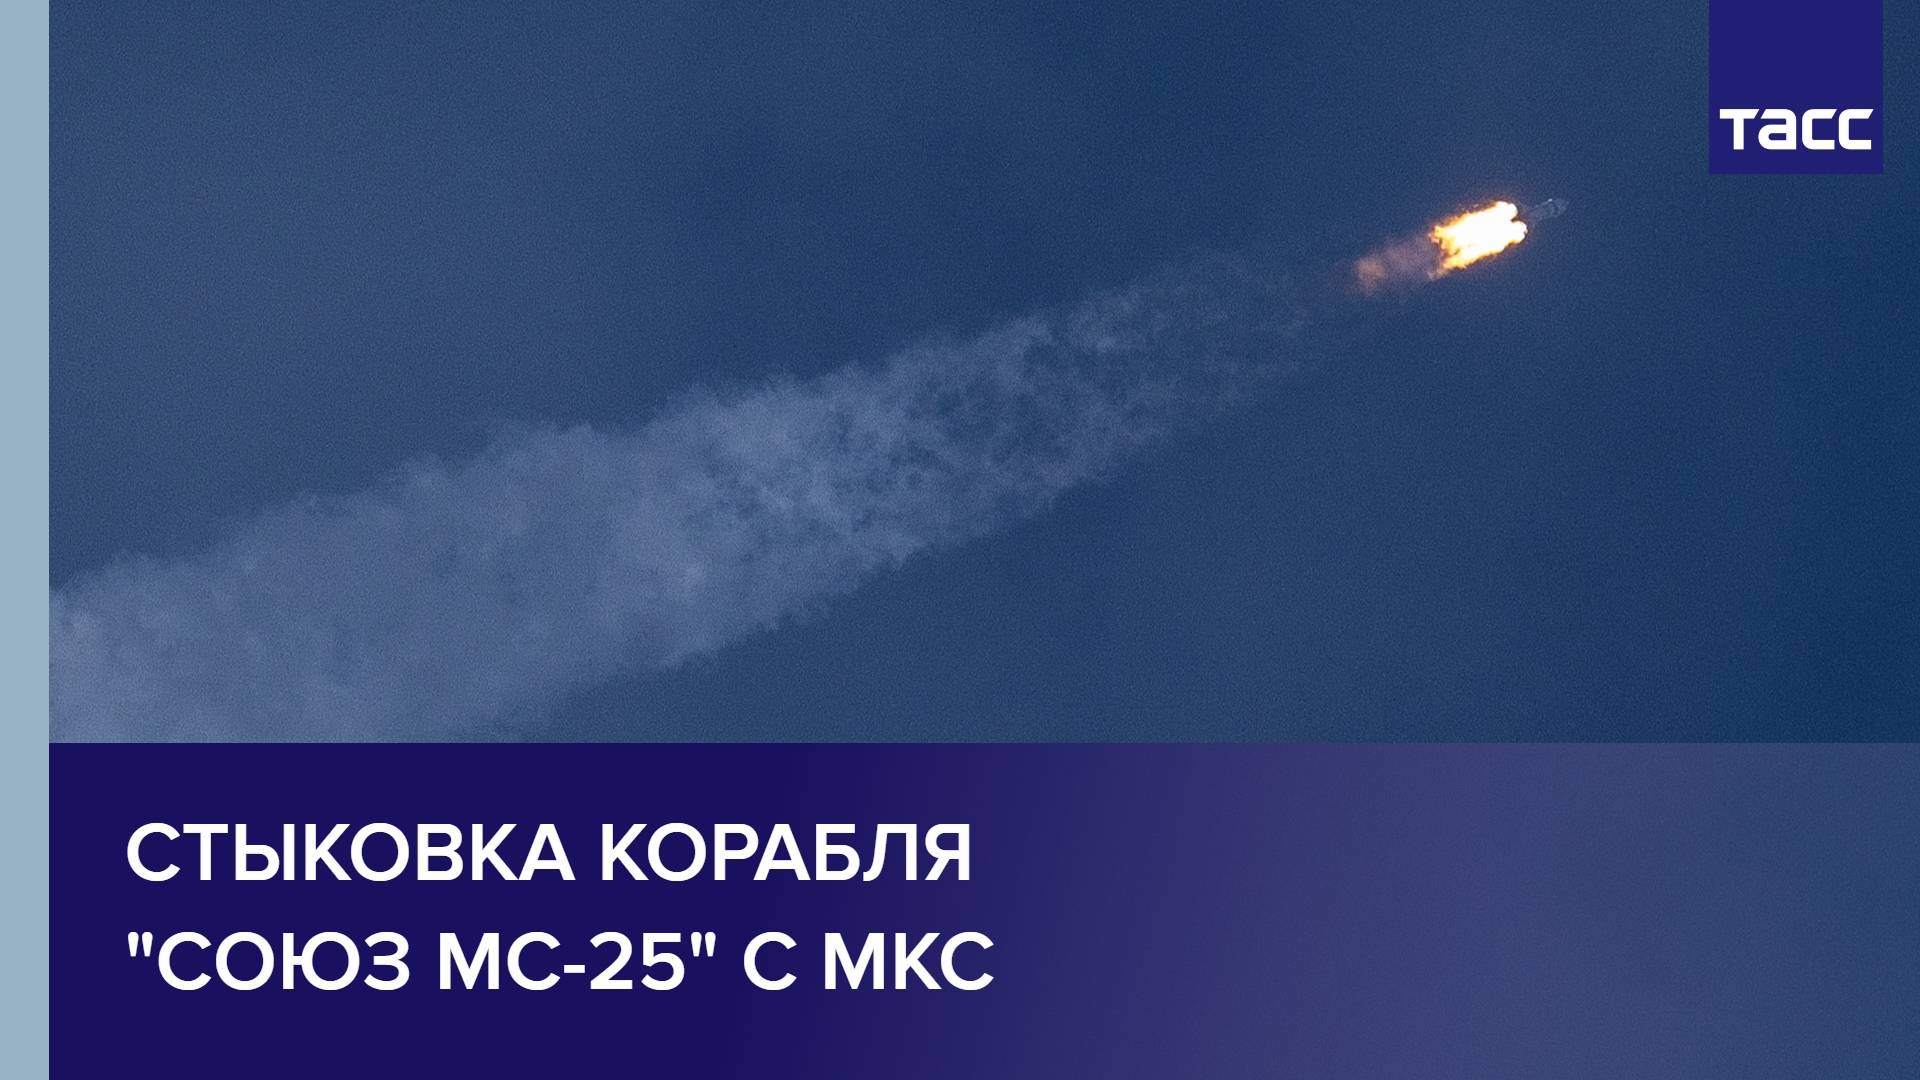 Стыковка корабля "Союз МС-25" с МКС